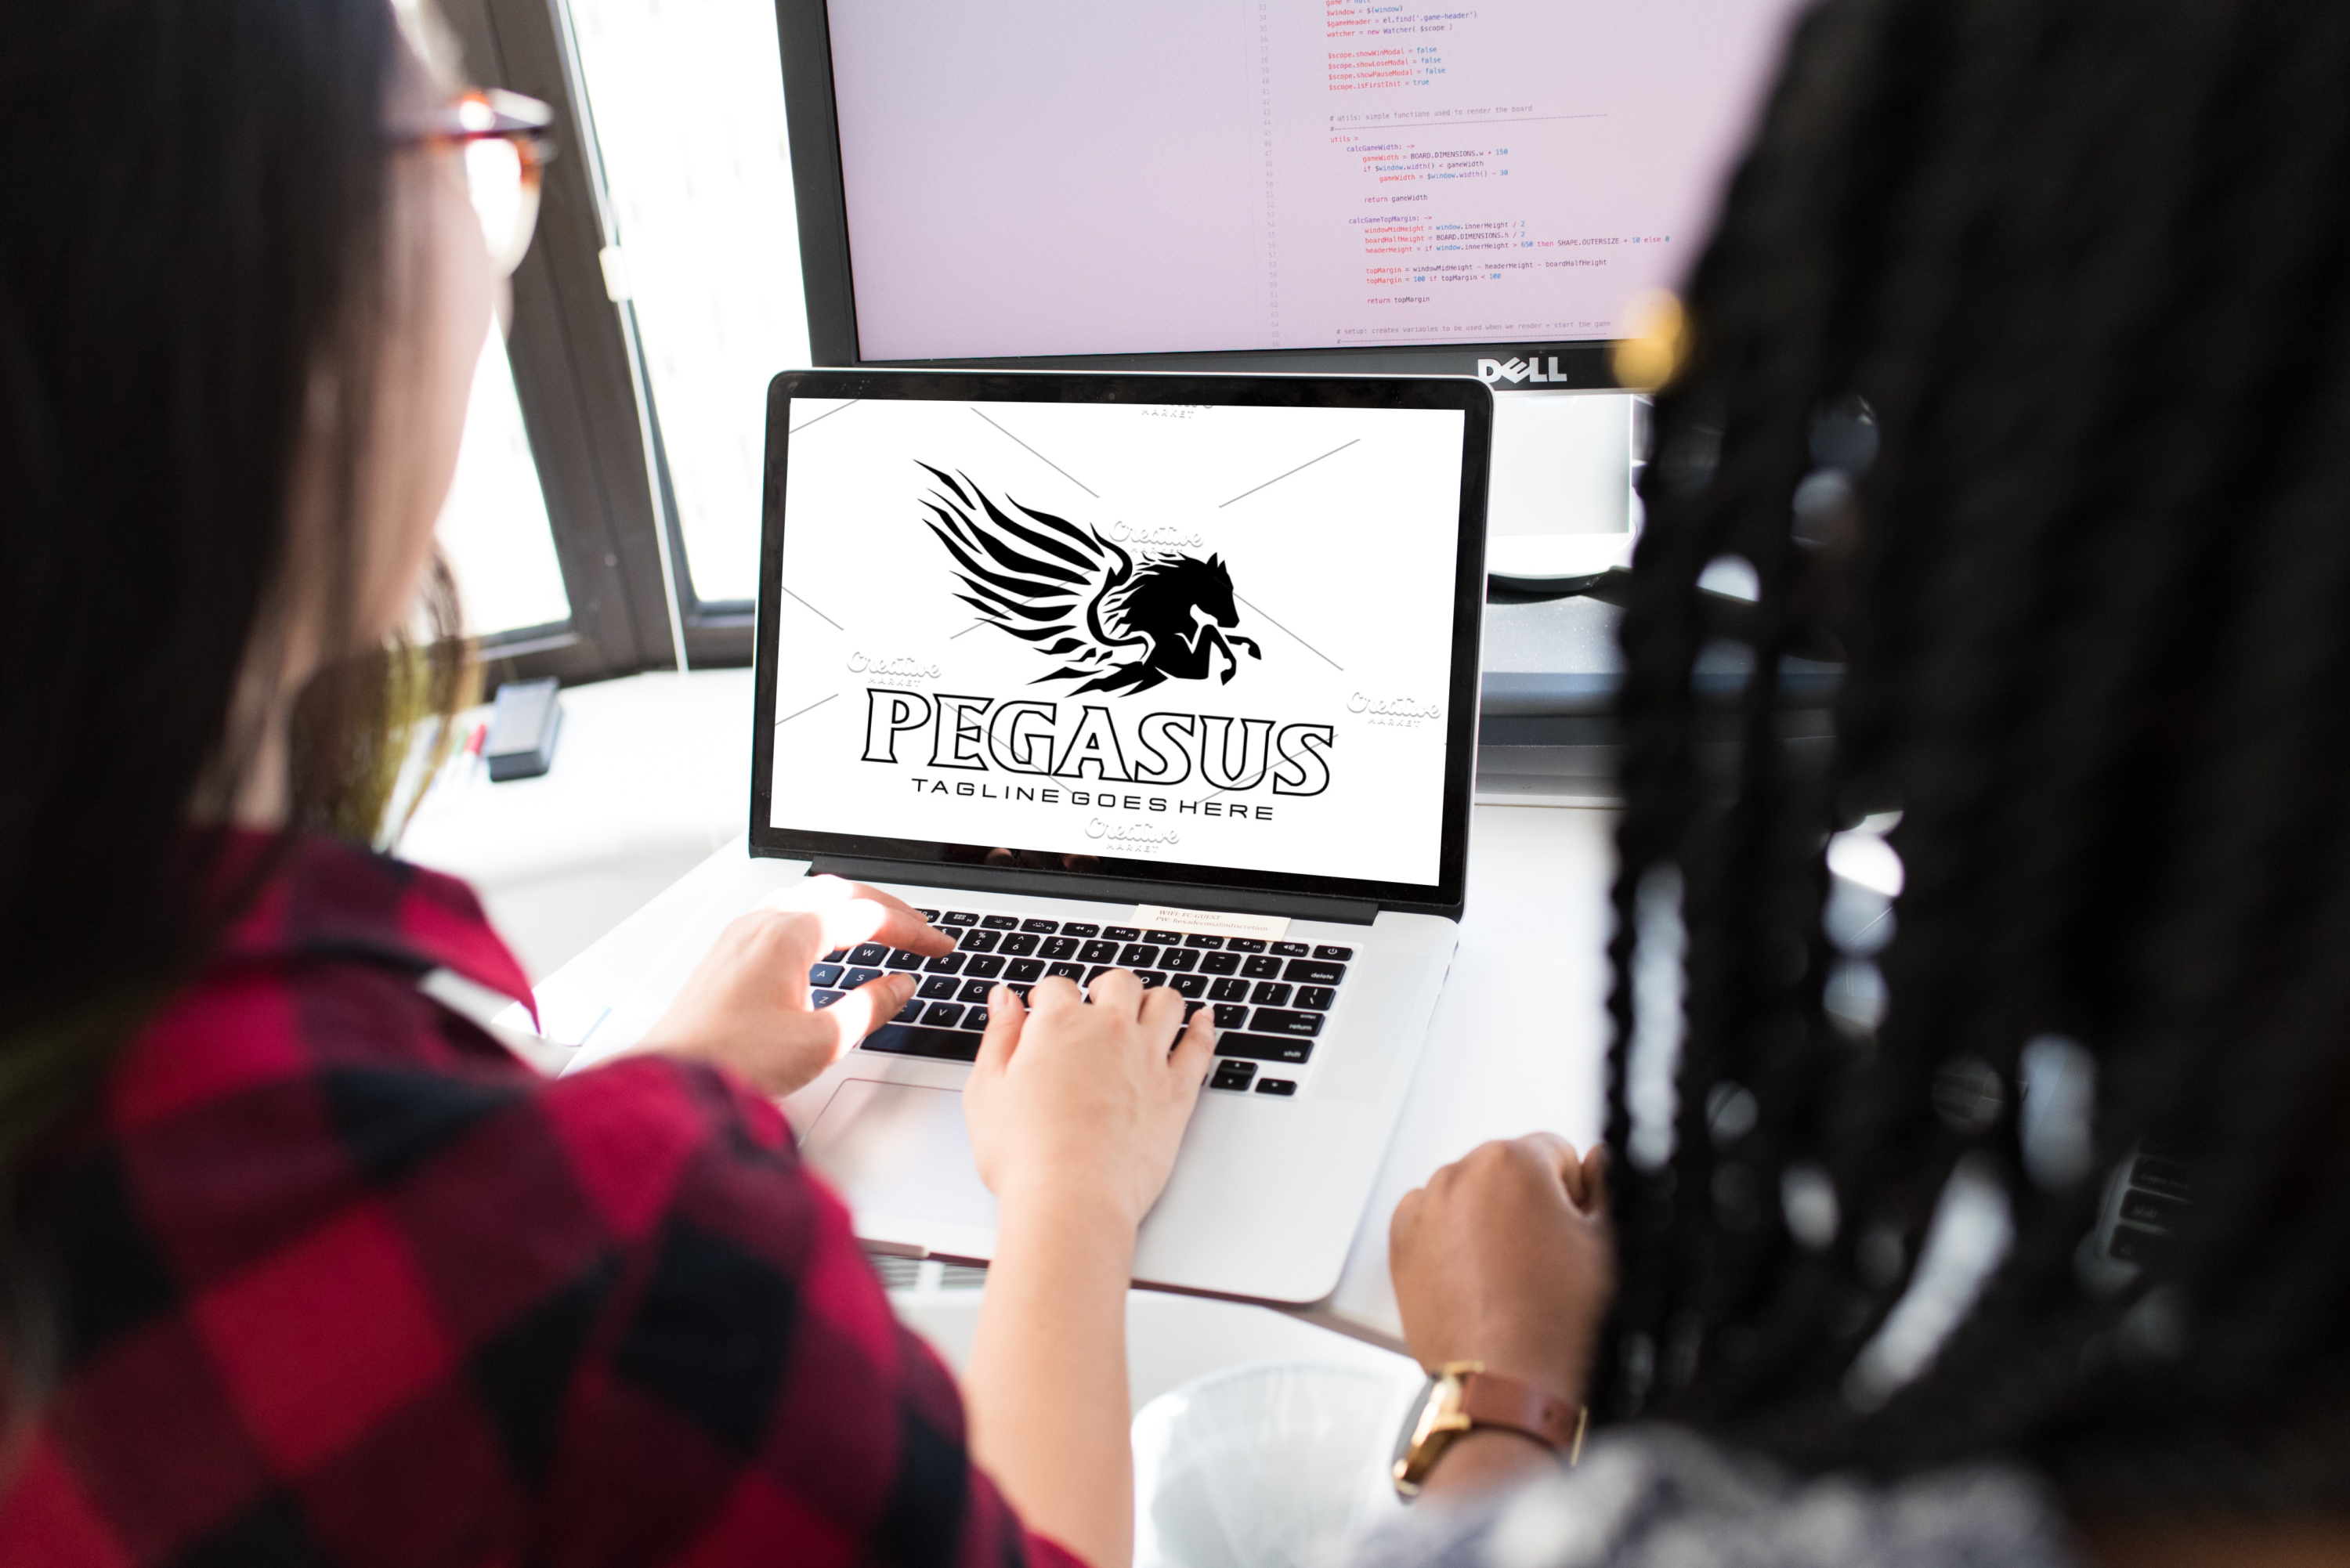 Pegasus concept design on laptop.